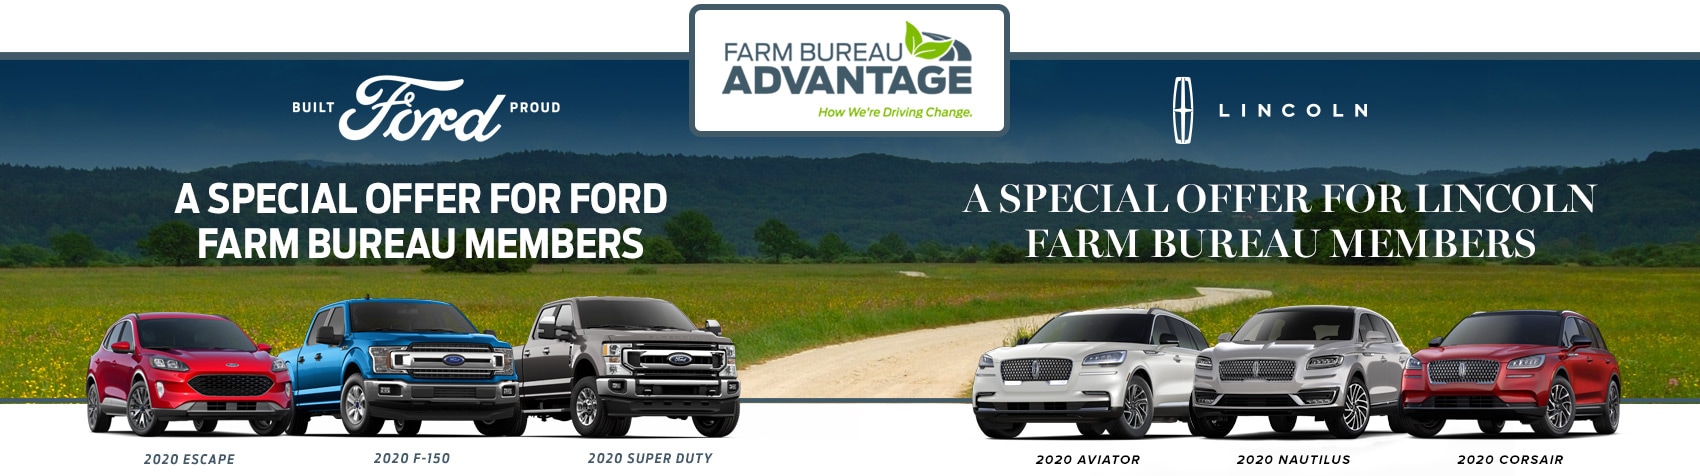 ford-farm-bureau-advantage-ferman-ford